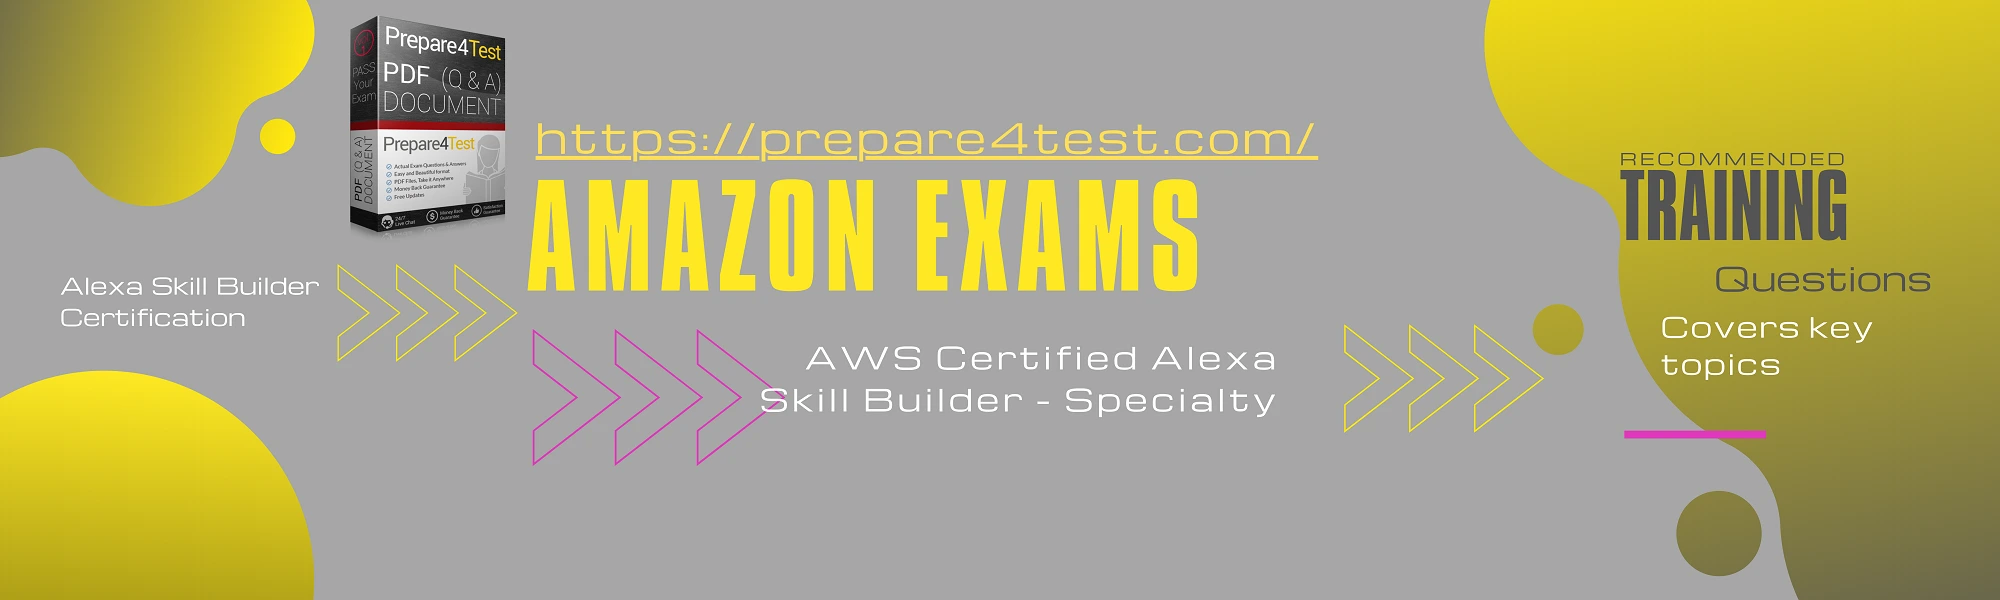 Alexa Skill Builder Certification buy now